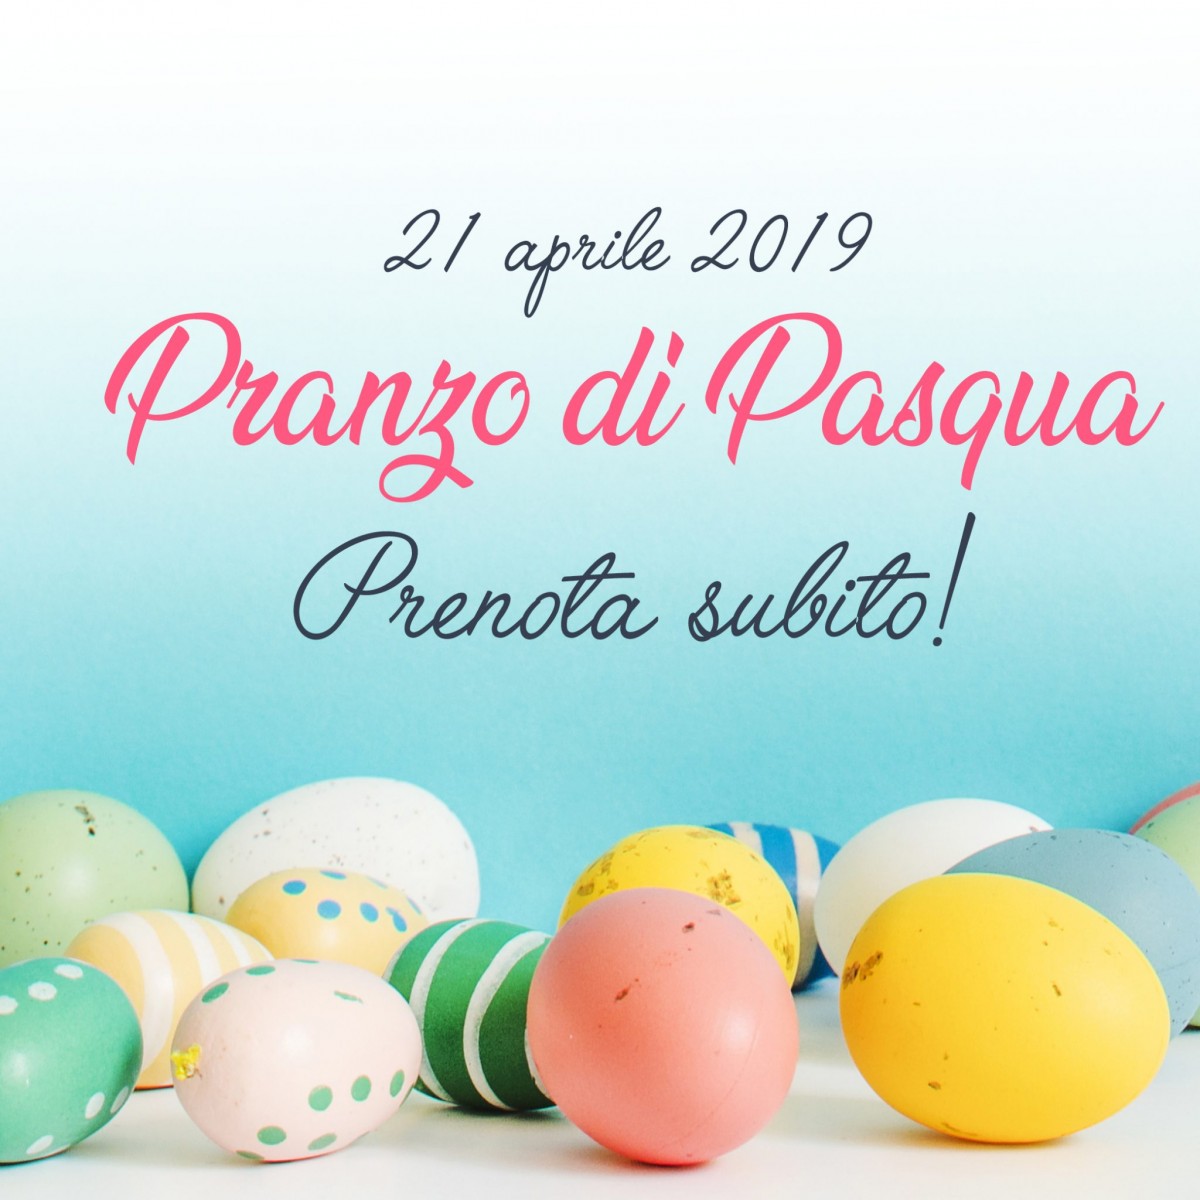 pranzo-di-pasqua-2019-prenota